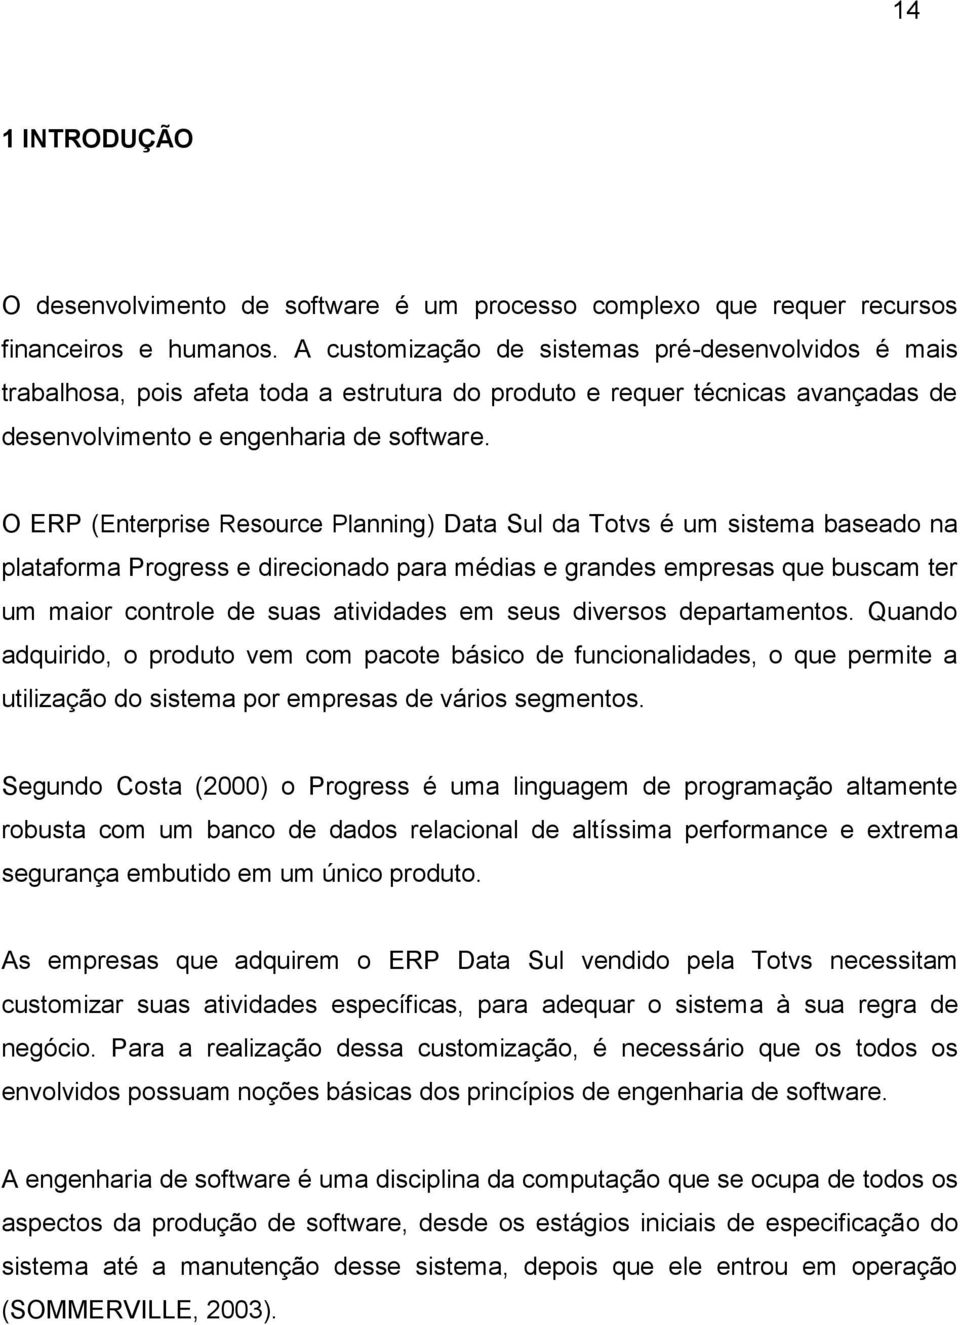 O ERP (Enterprise Resource Planning) Data Sul da Totvs é um sistema baseado na plataforma Progress e direcionado para médias e grandes empresas que buscam ter um maior controle de suas atividades em